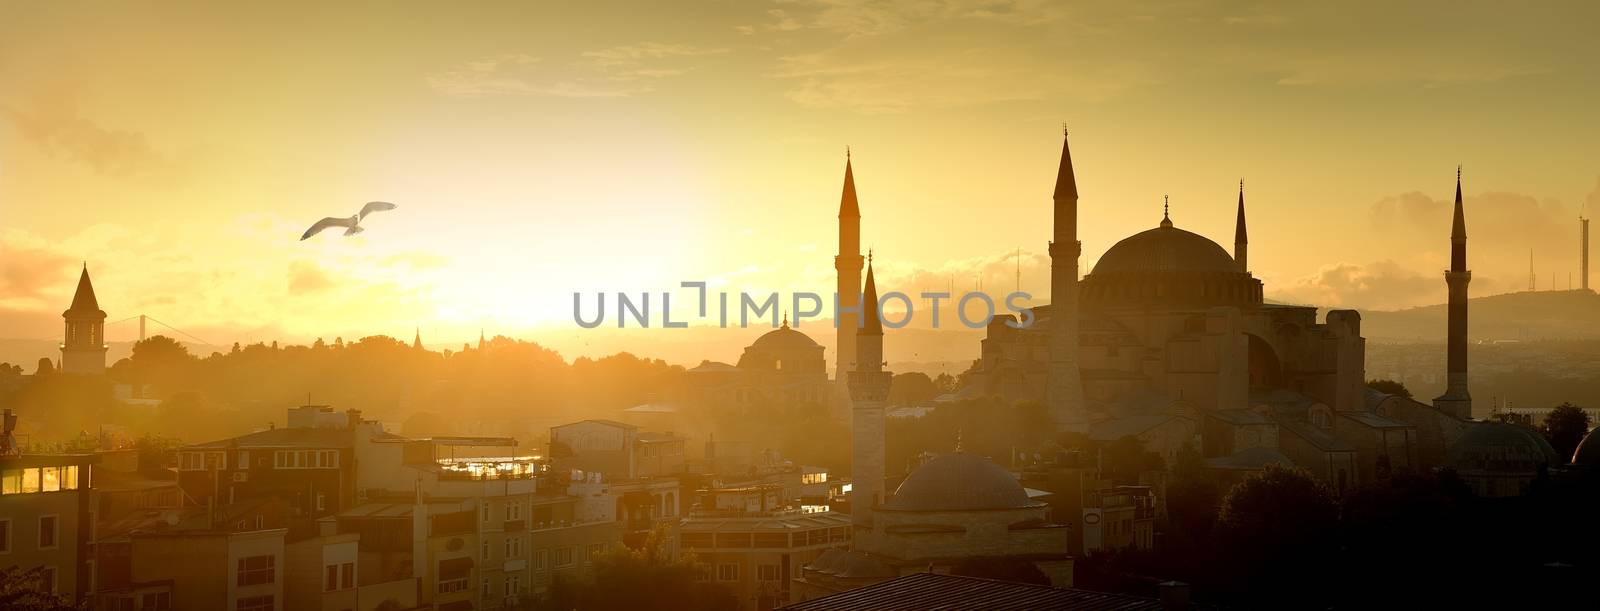 Hagia Sophia at sunrise by Givaga